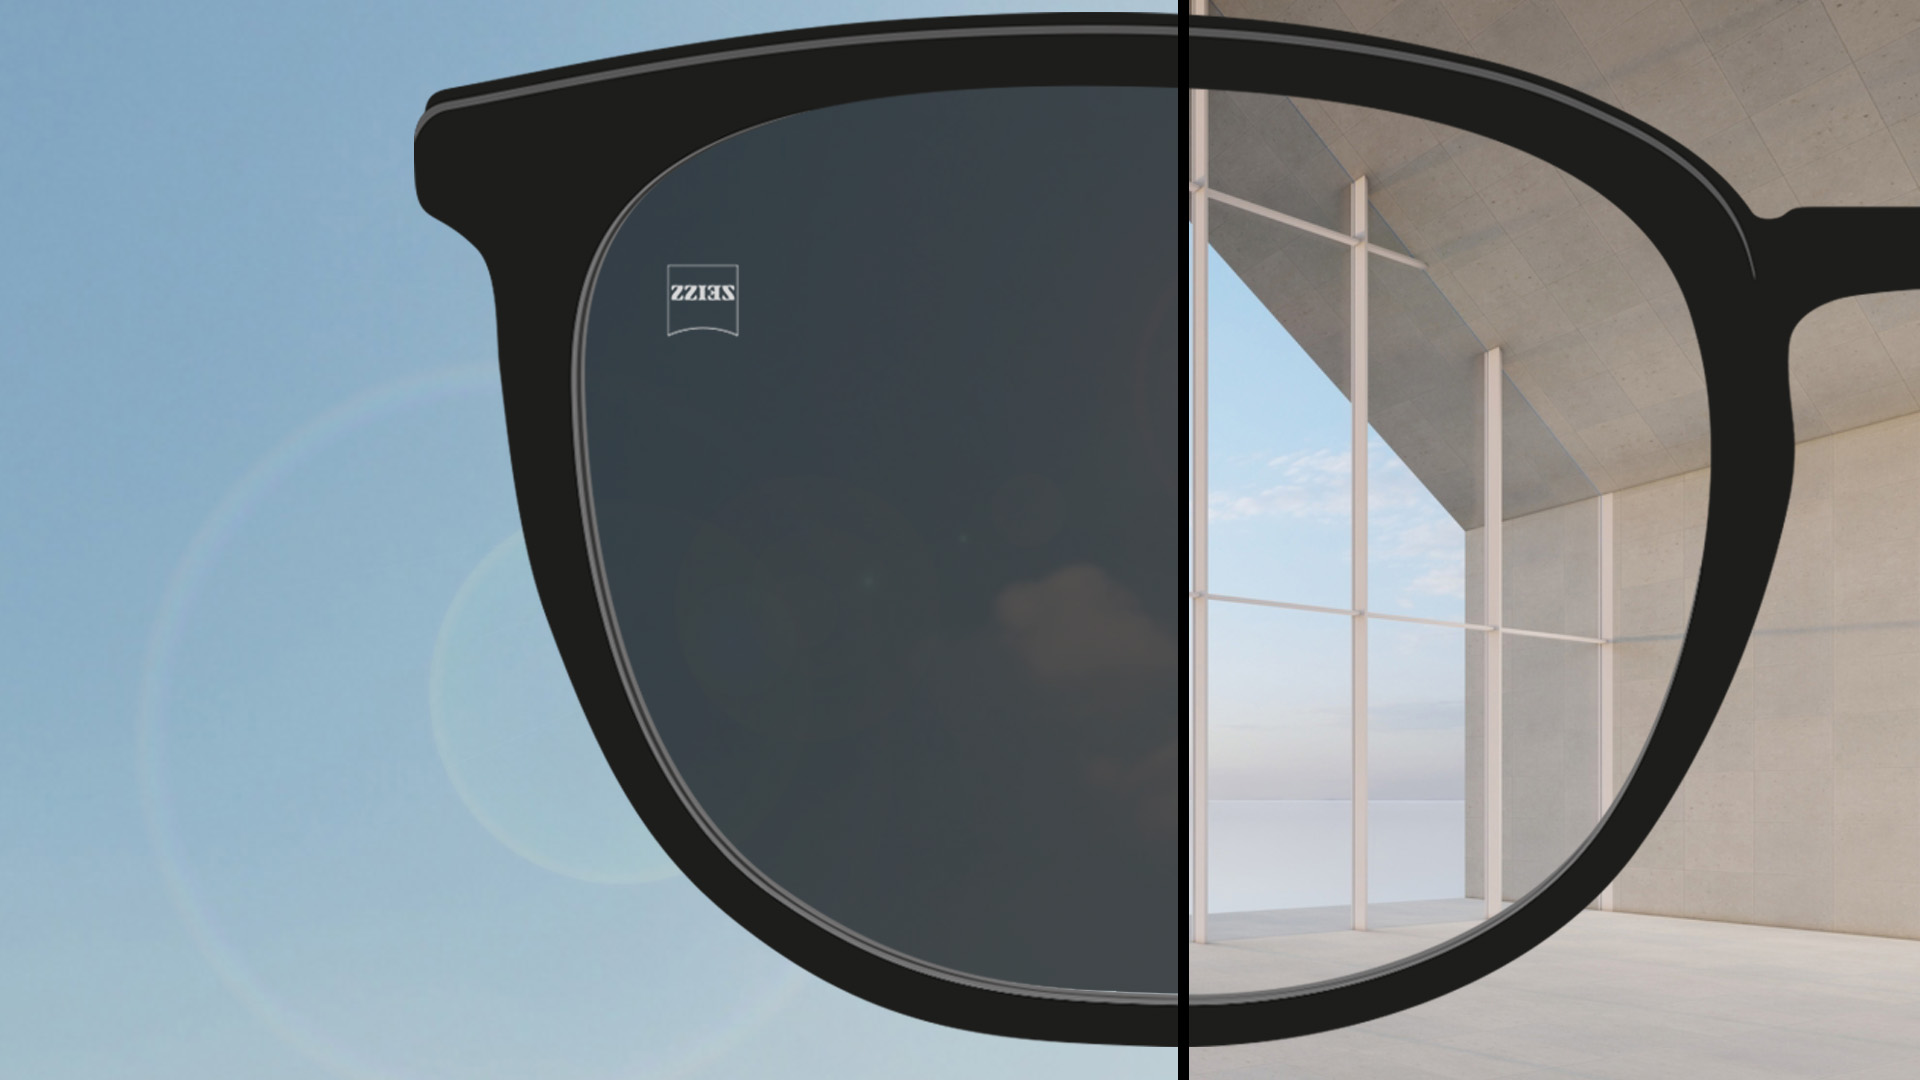 Une image montrant le point de vue avec une moitié de verre transparente à l’intérieur et l’autre moitié entièrement teintée à l’extérieur.